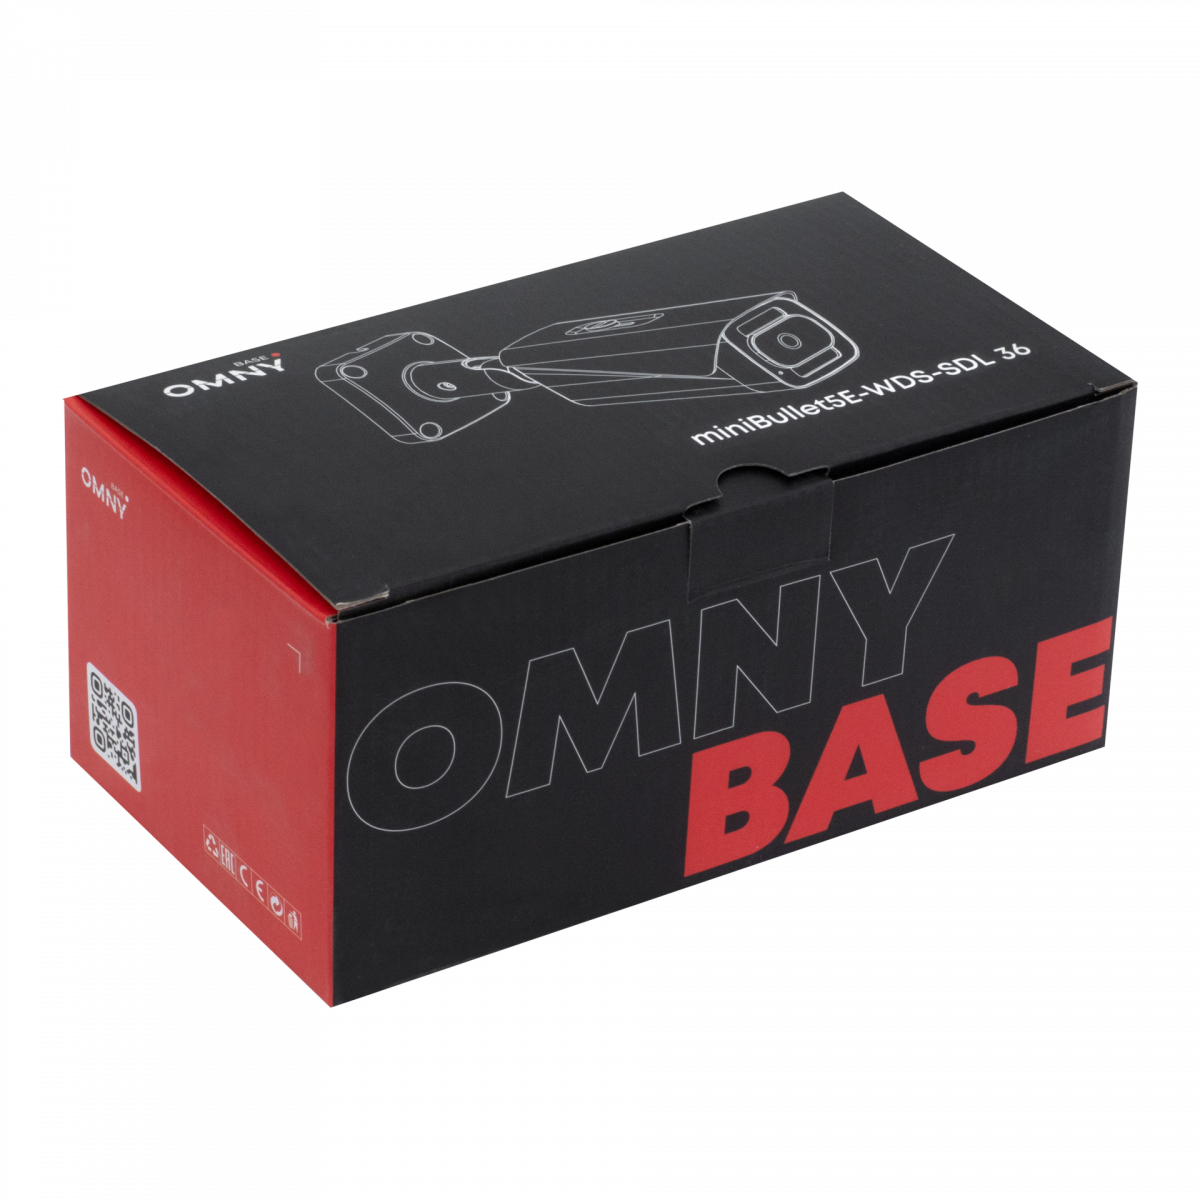 Камера сетевая буллет 5Мп OMNY BASE miniBullet5E-WDS-SDL-C 36 с двойной подсветкой и микрофоном